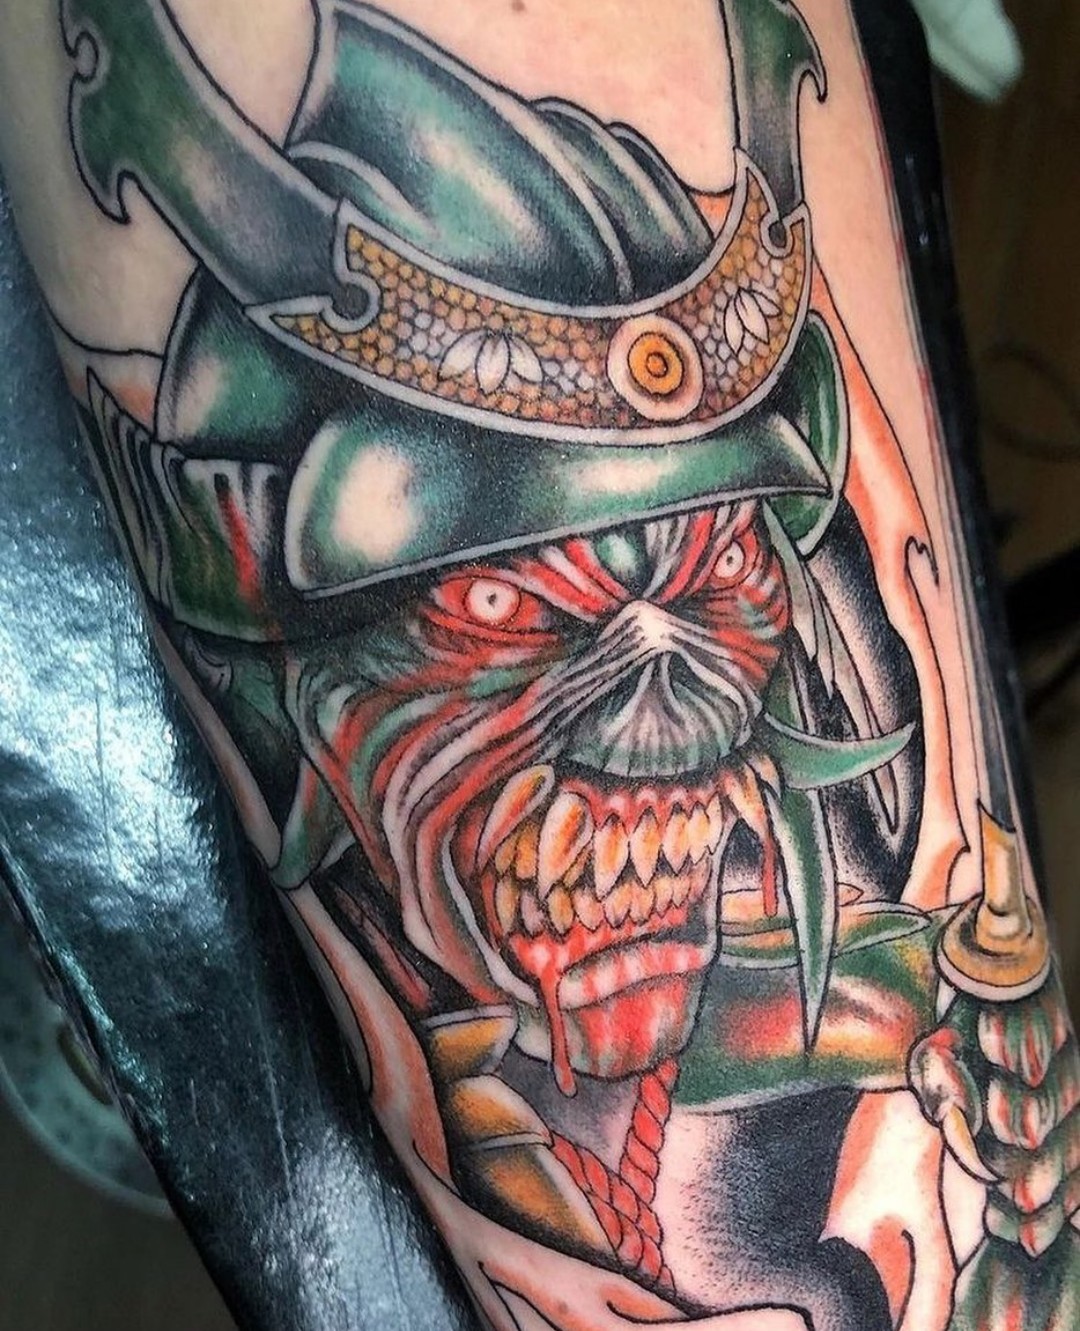 Eddie  Iron Maiden tattoo